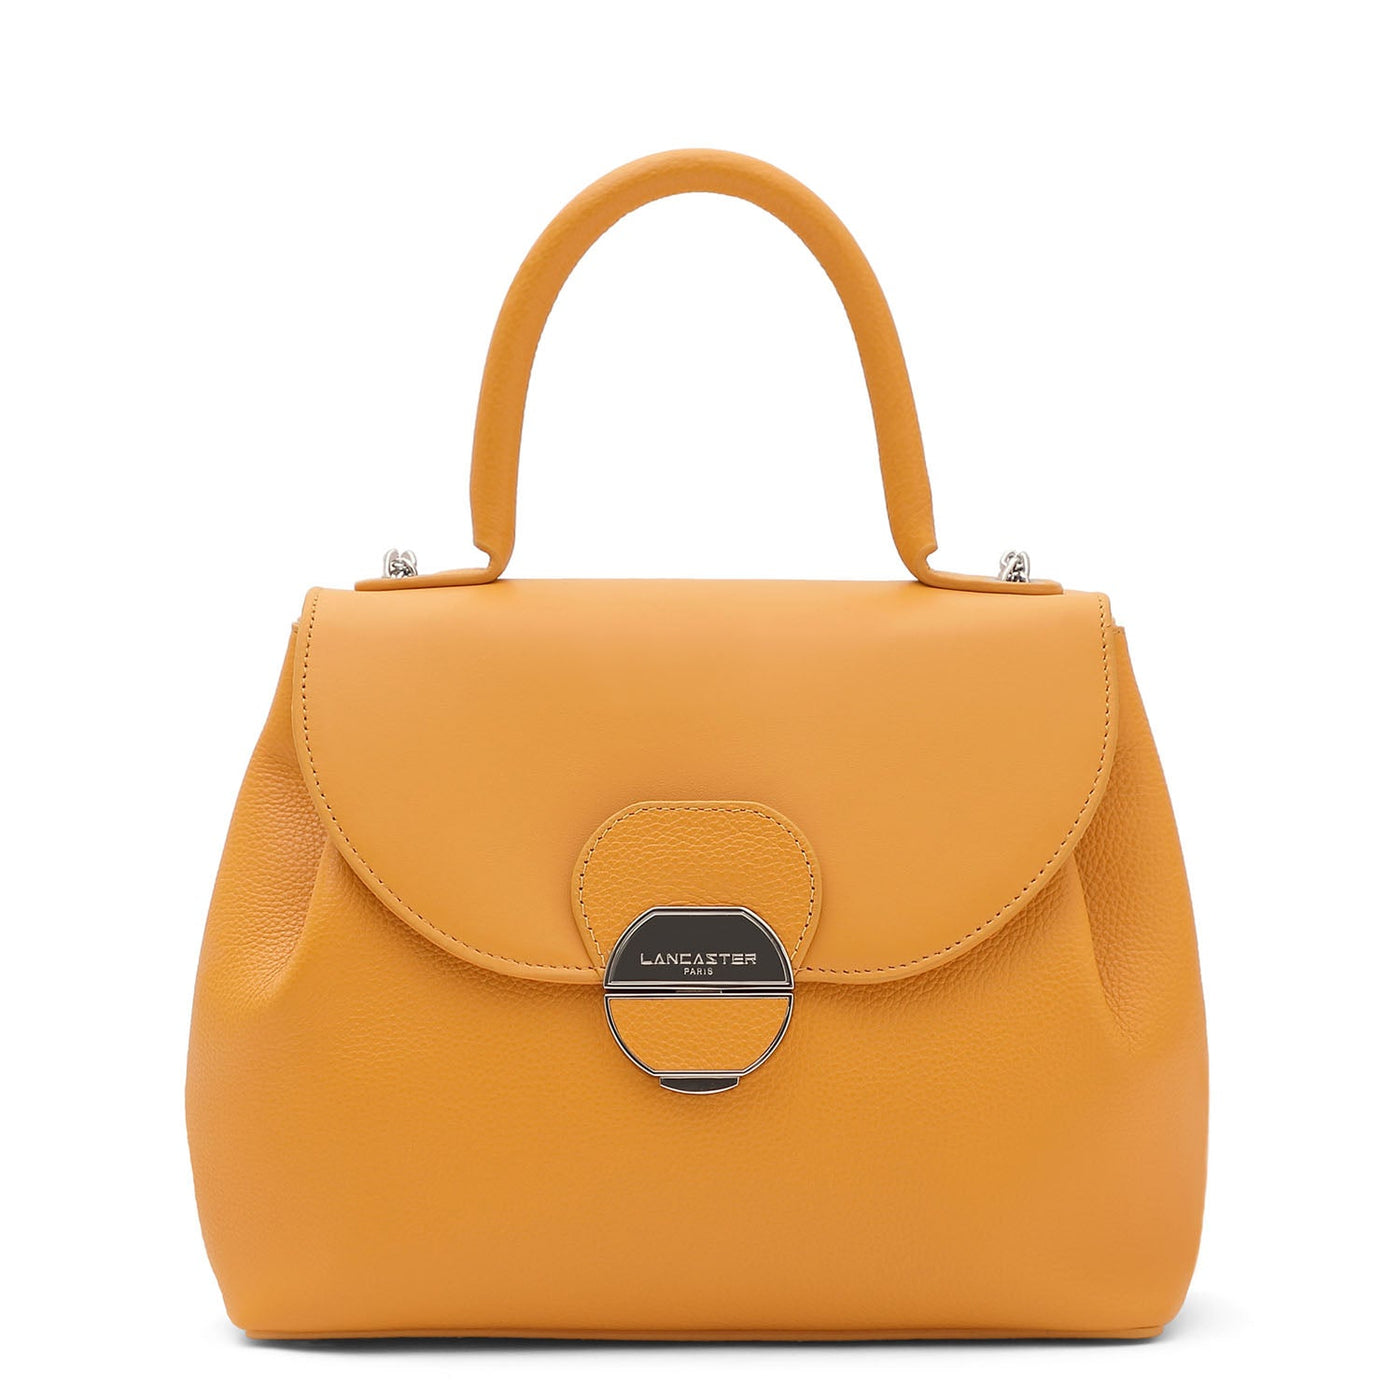 m handbag - pia #couleur_safran